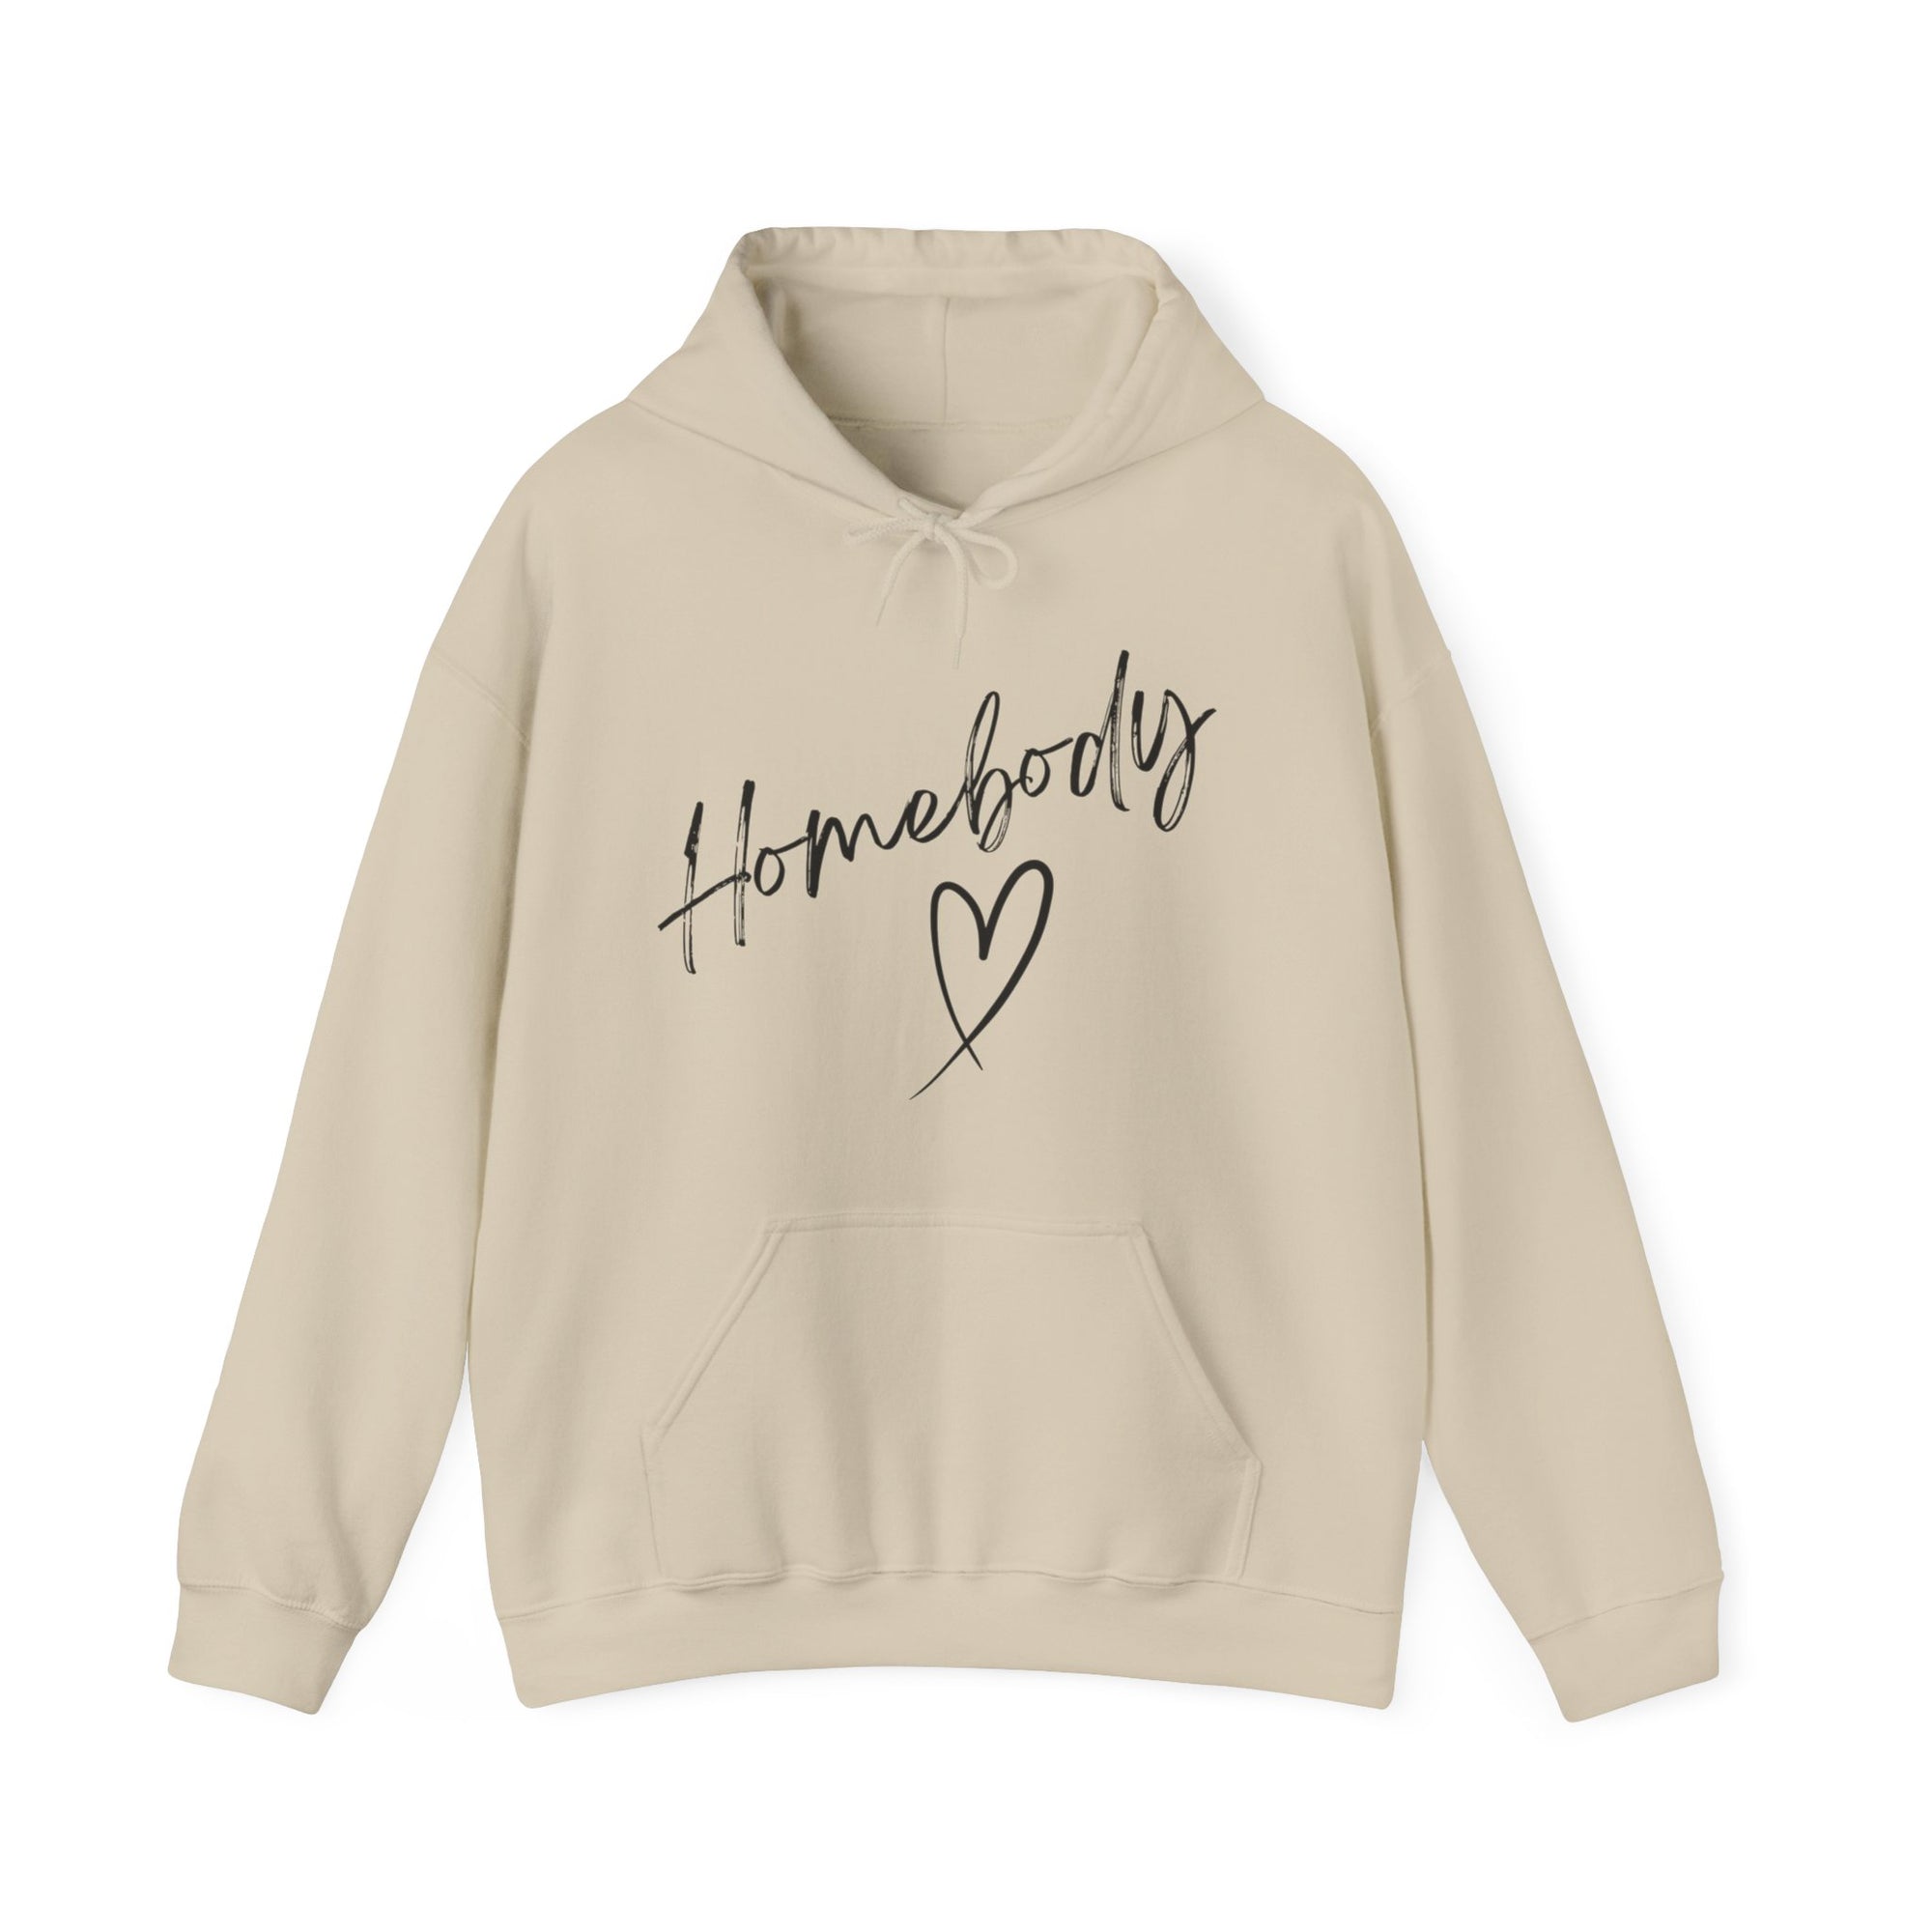 "Homebody Hooded Sweatshirt